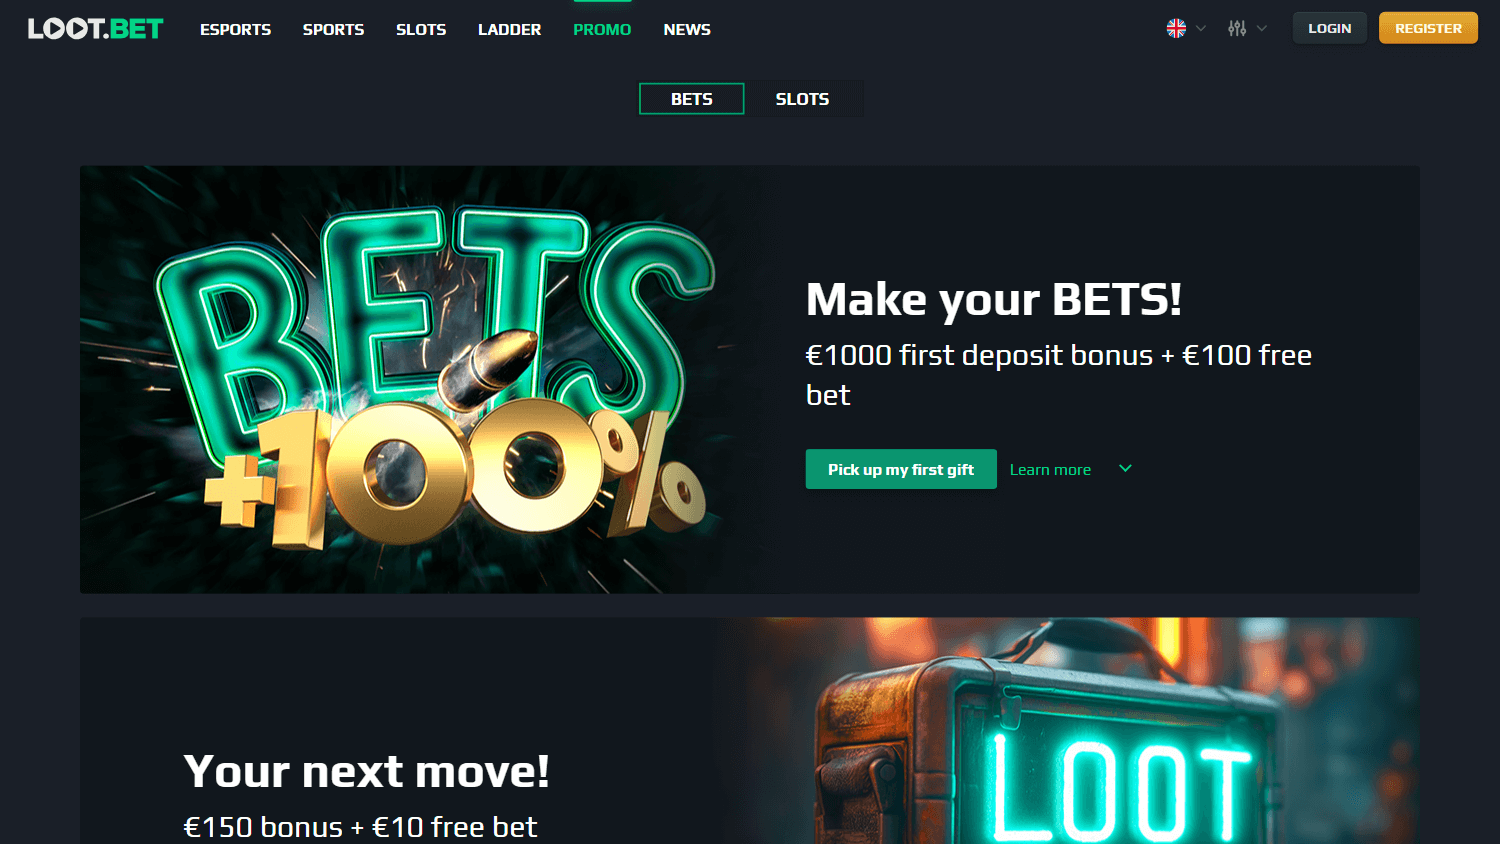 loot.bet_casino_promotions_desktop